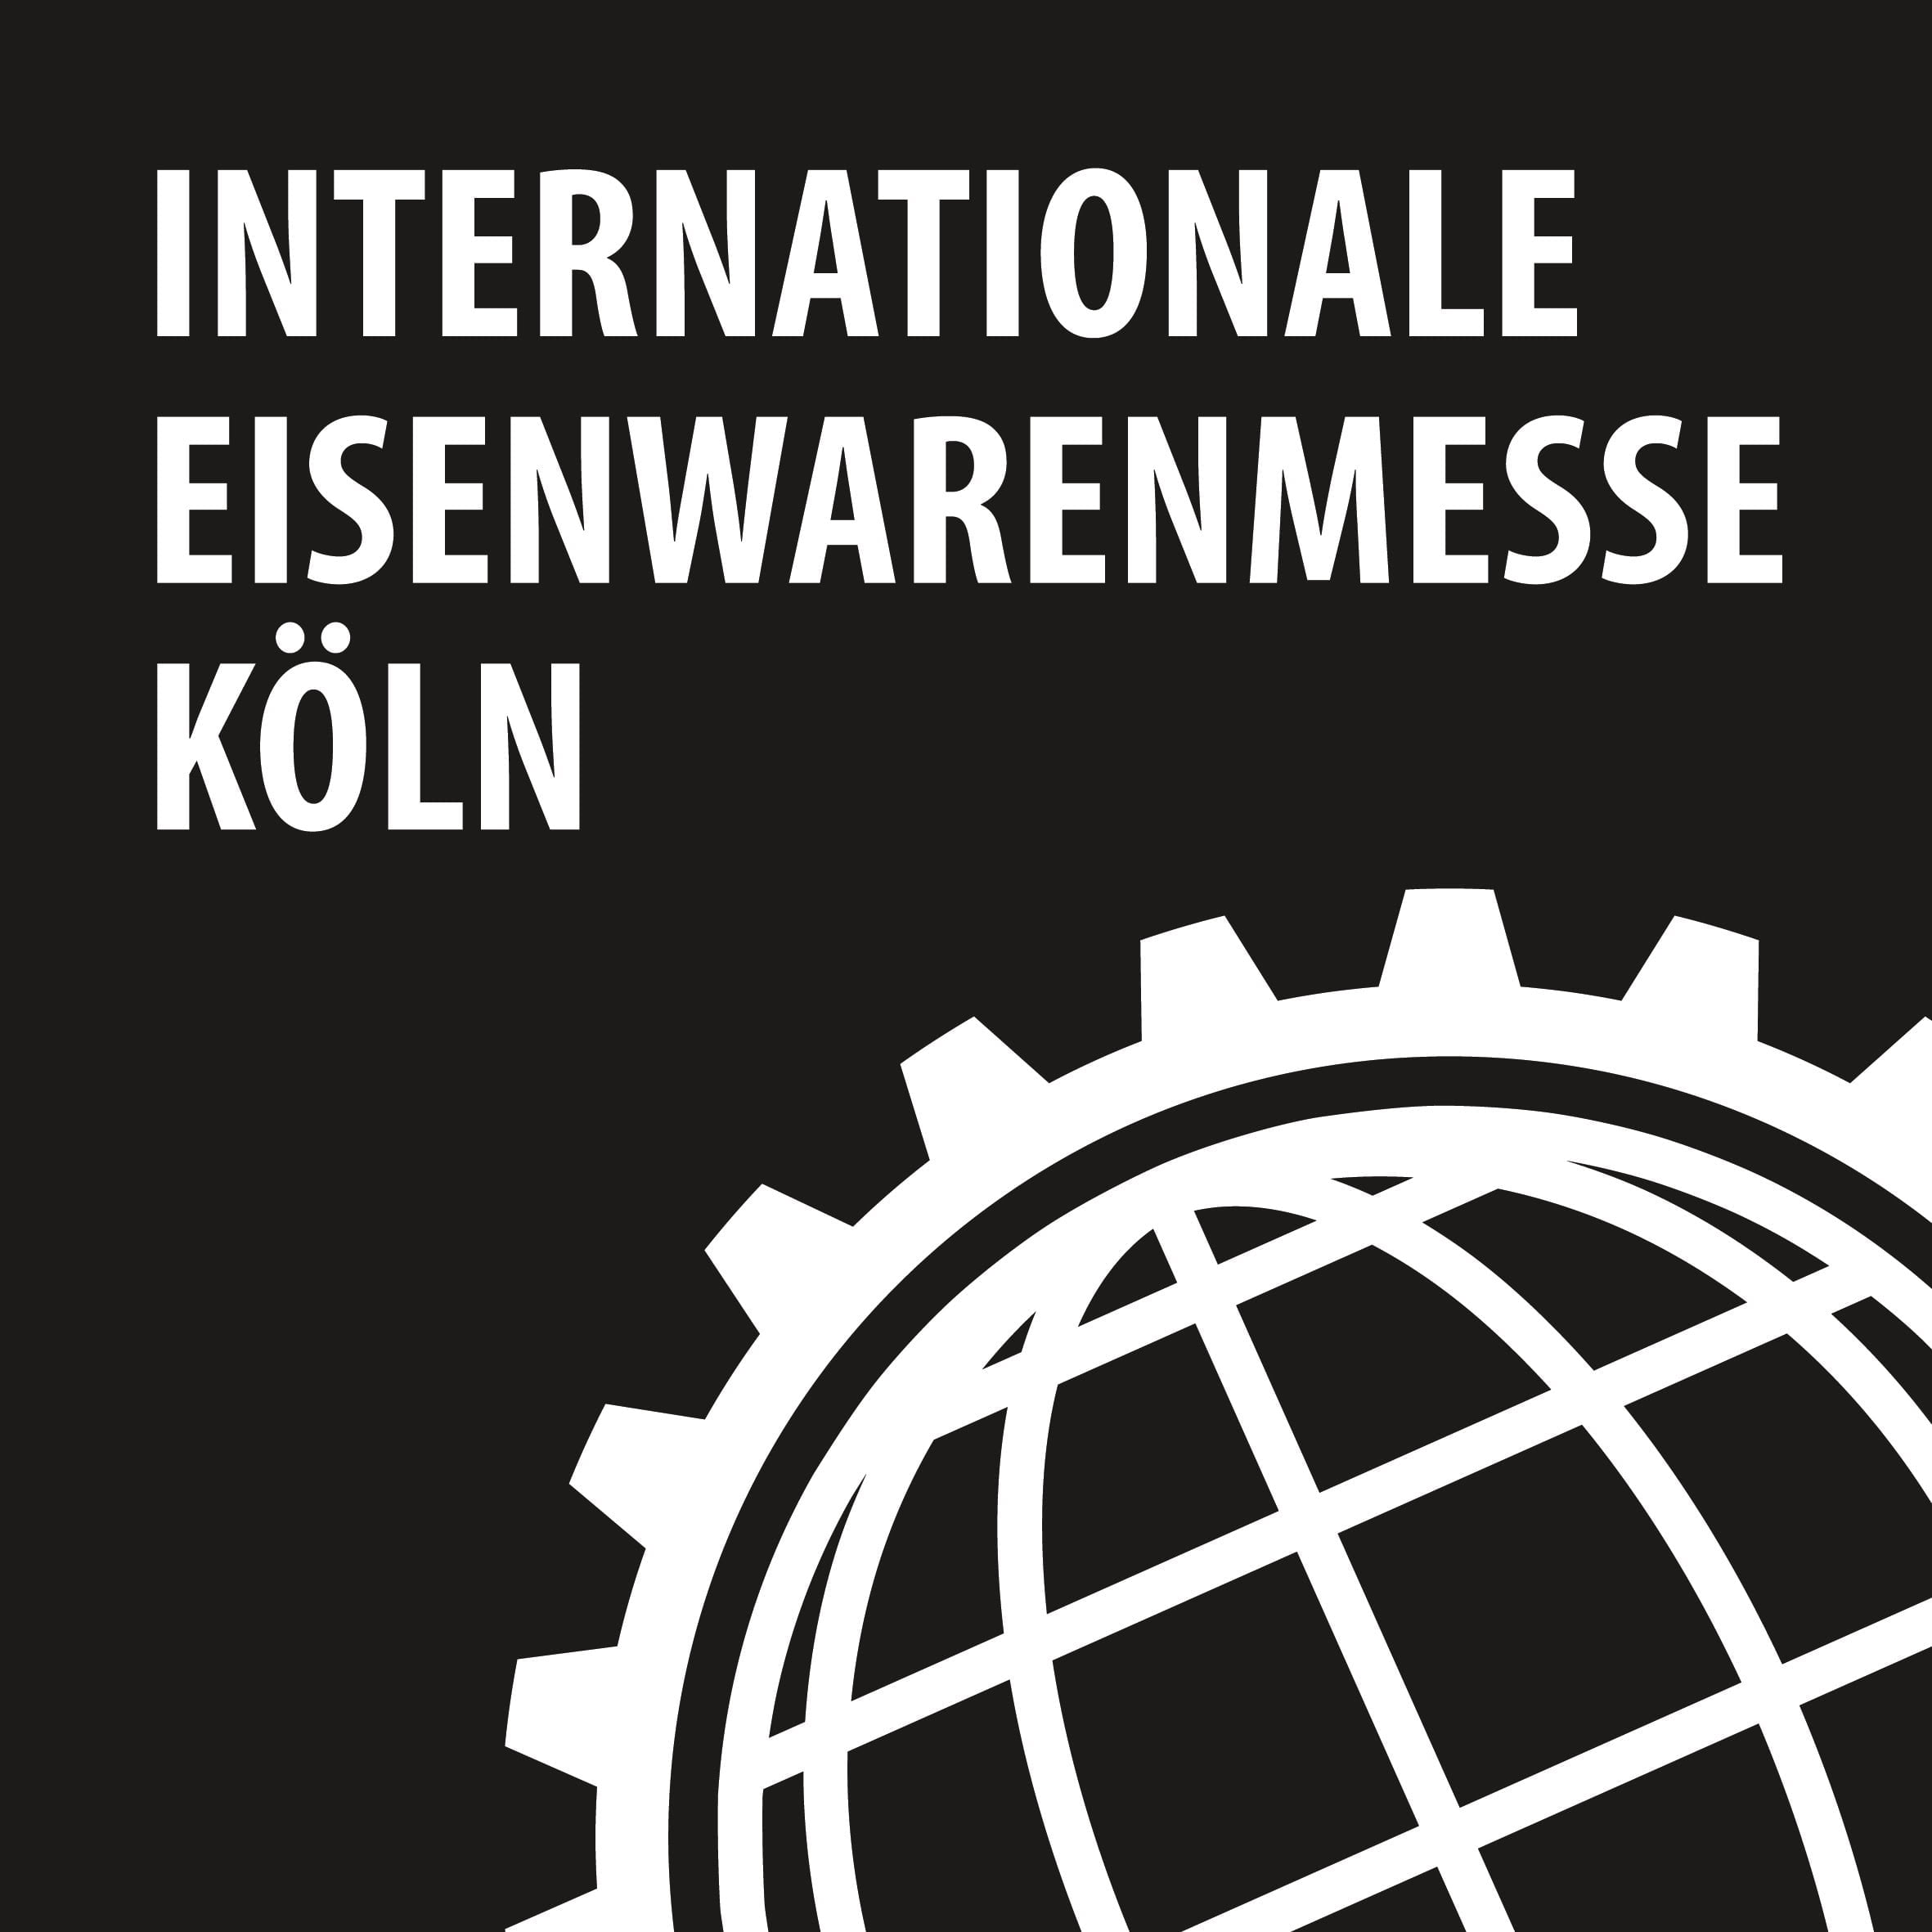 Eisenwarenmesse Logo Köln